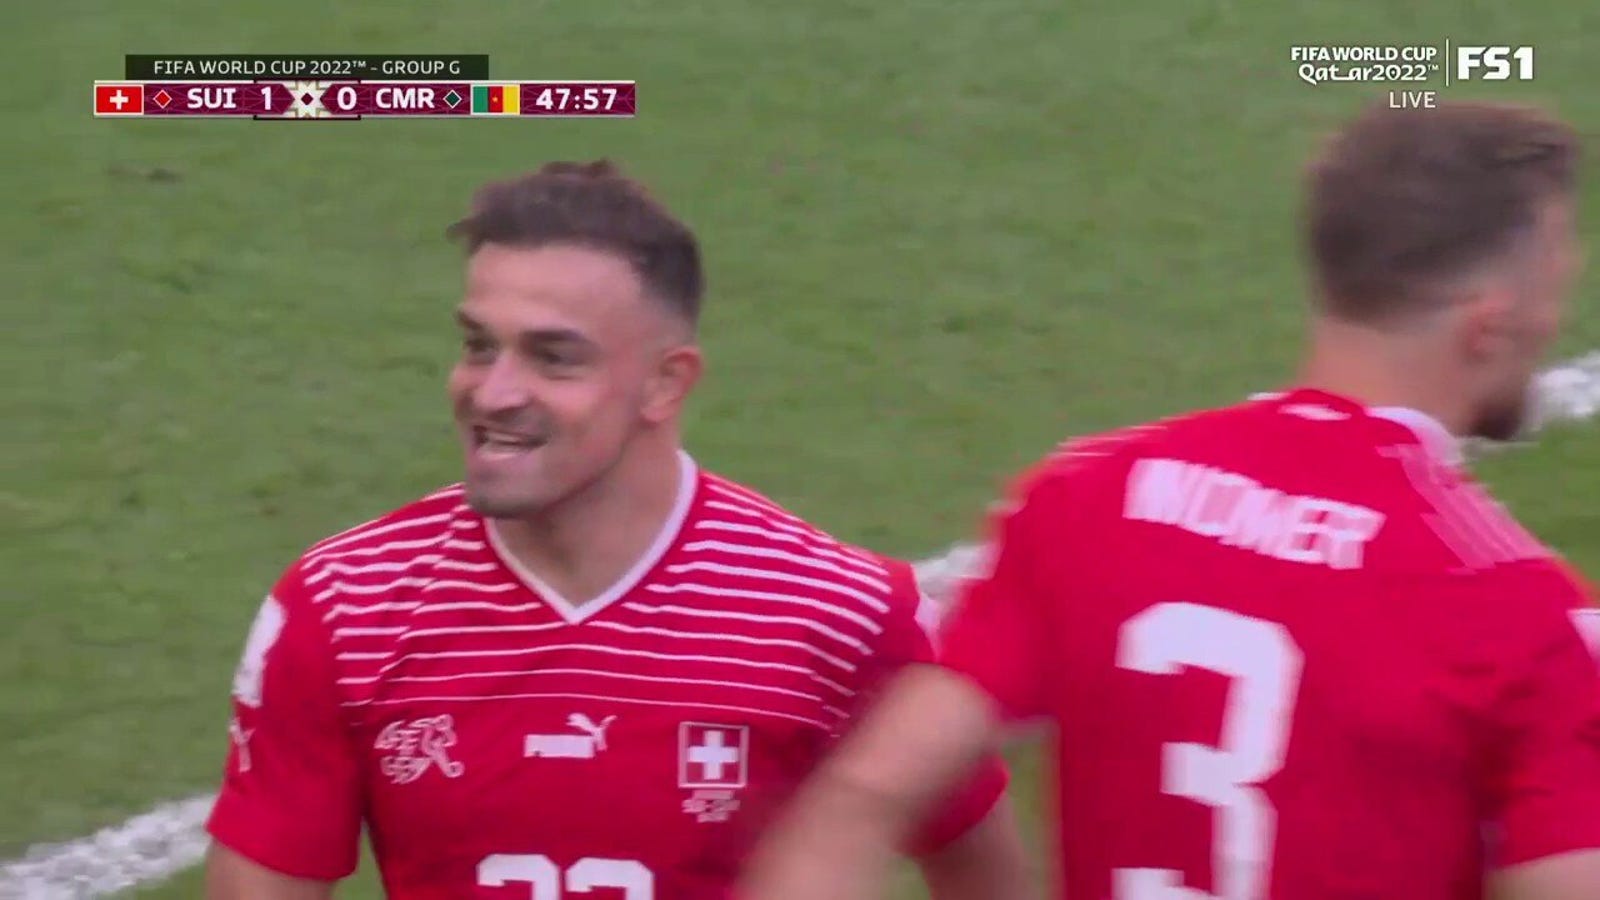 Brill Empolo segna il gol della Svizzera contro il Camerun al 48' 